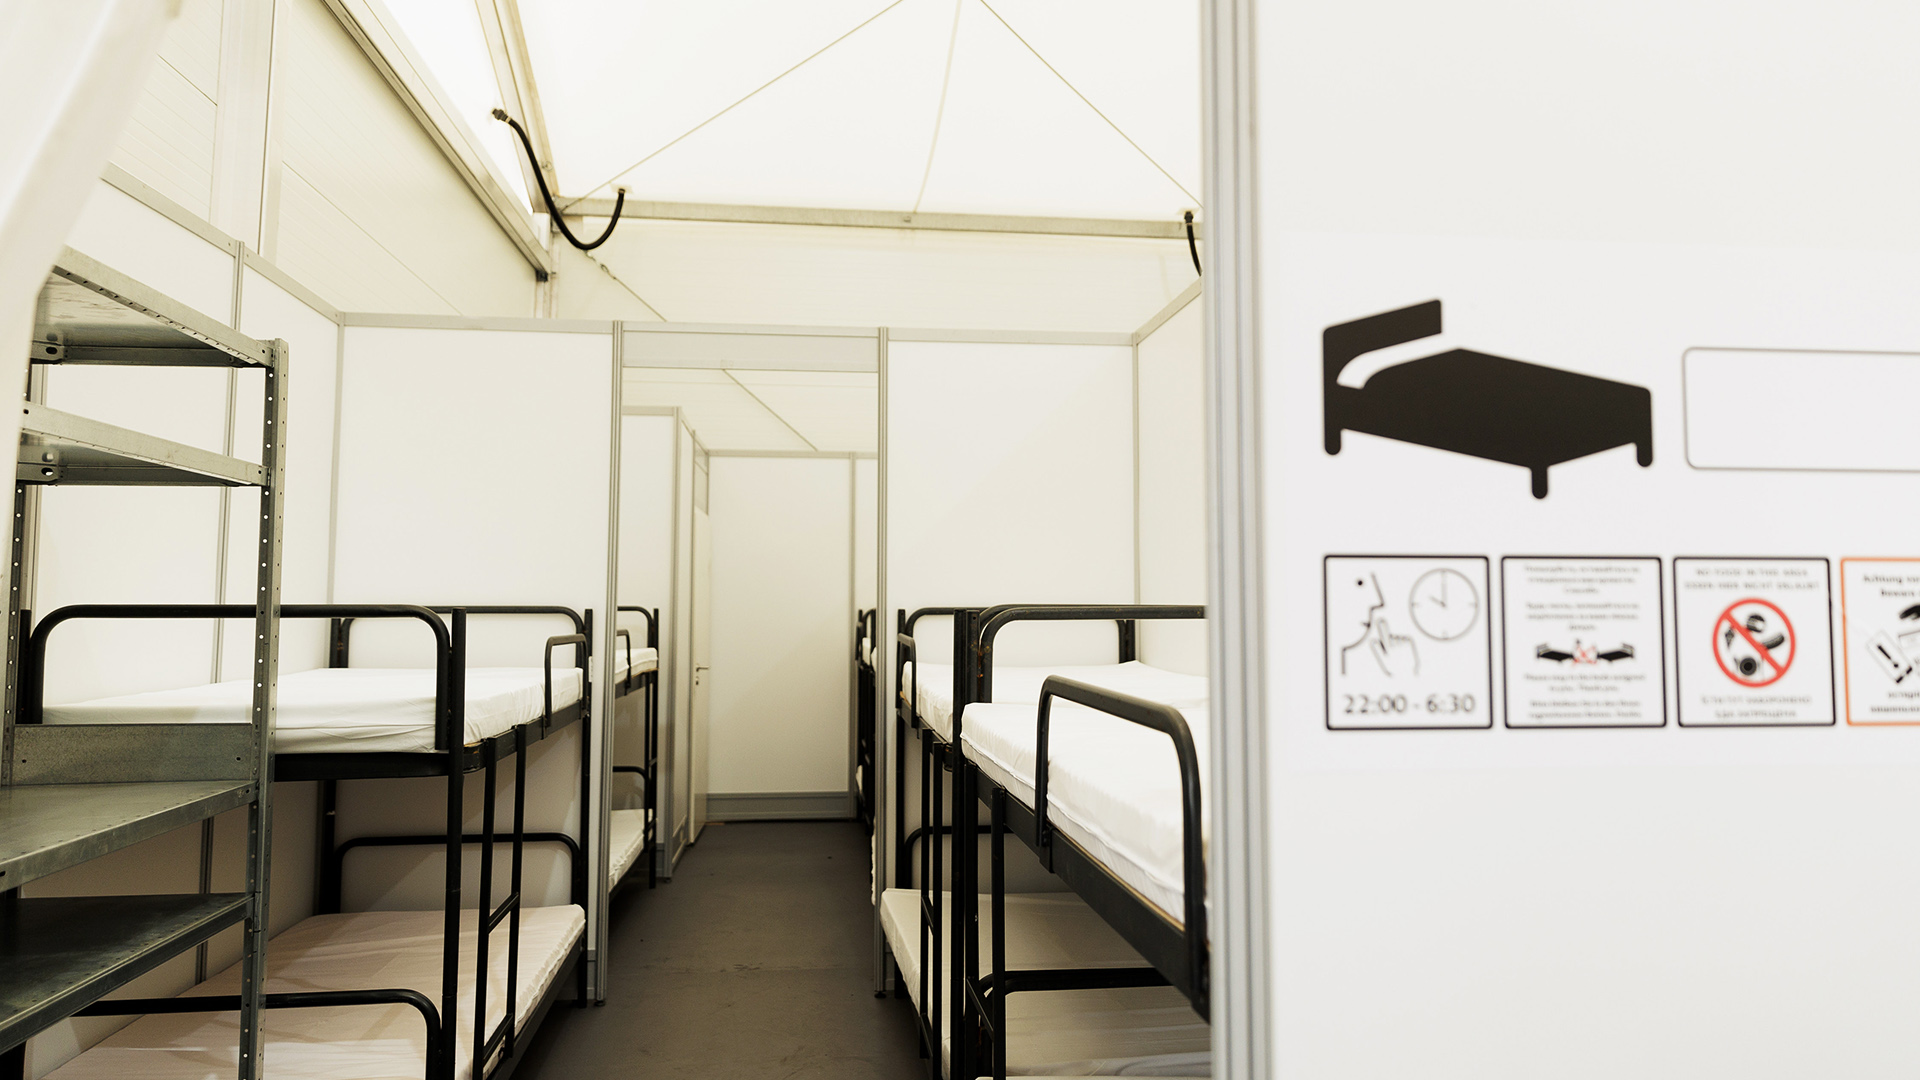 Symbolbild: Betten stehen in einem Raum als Unterkunft für Geflüchtete im Ankunftszentrum Tegel. (Quelle: dpa/Carsten Koall)